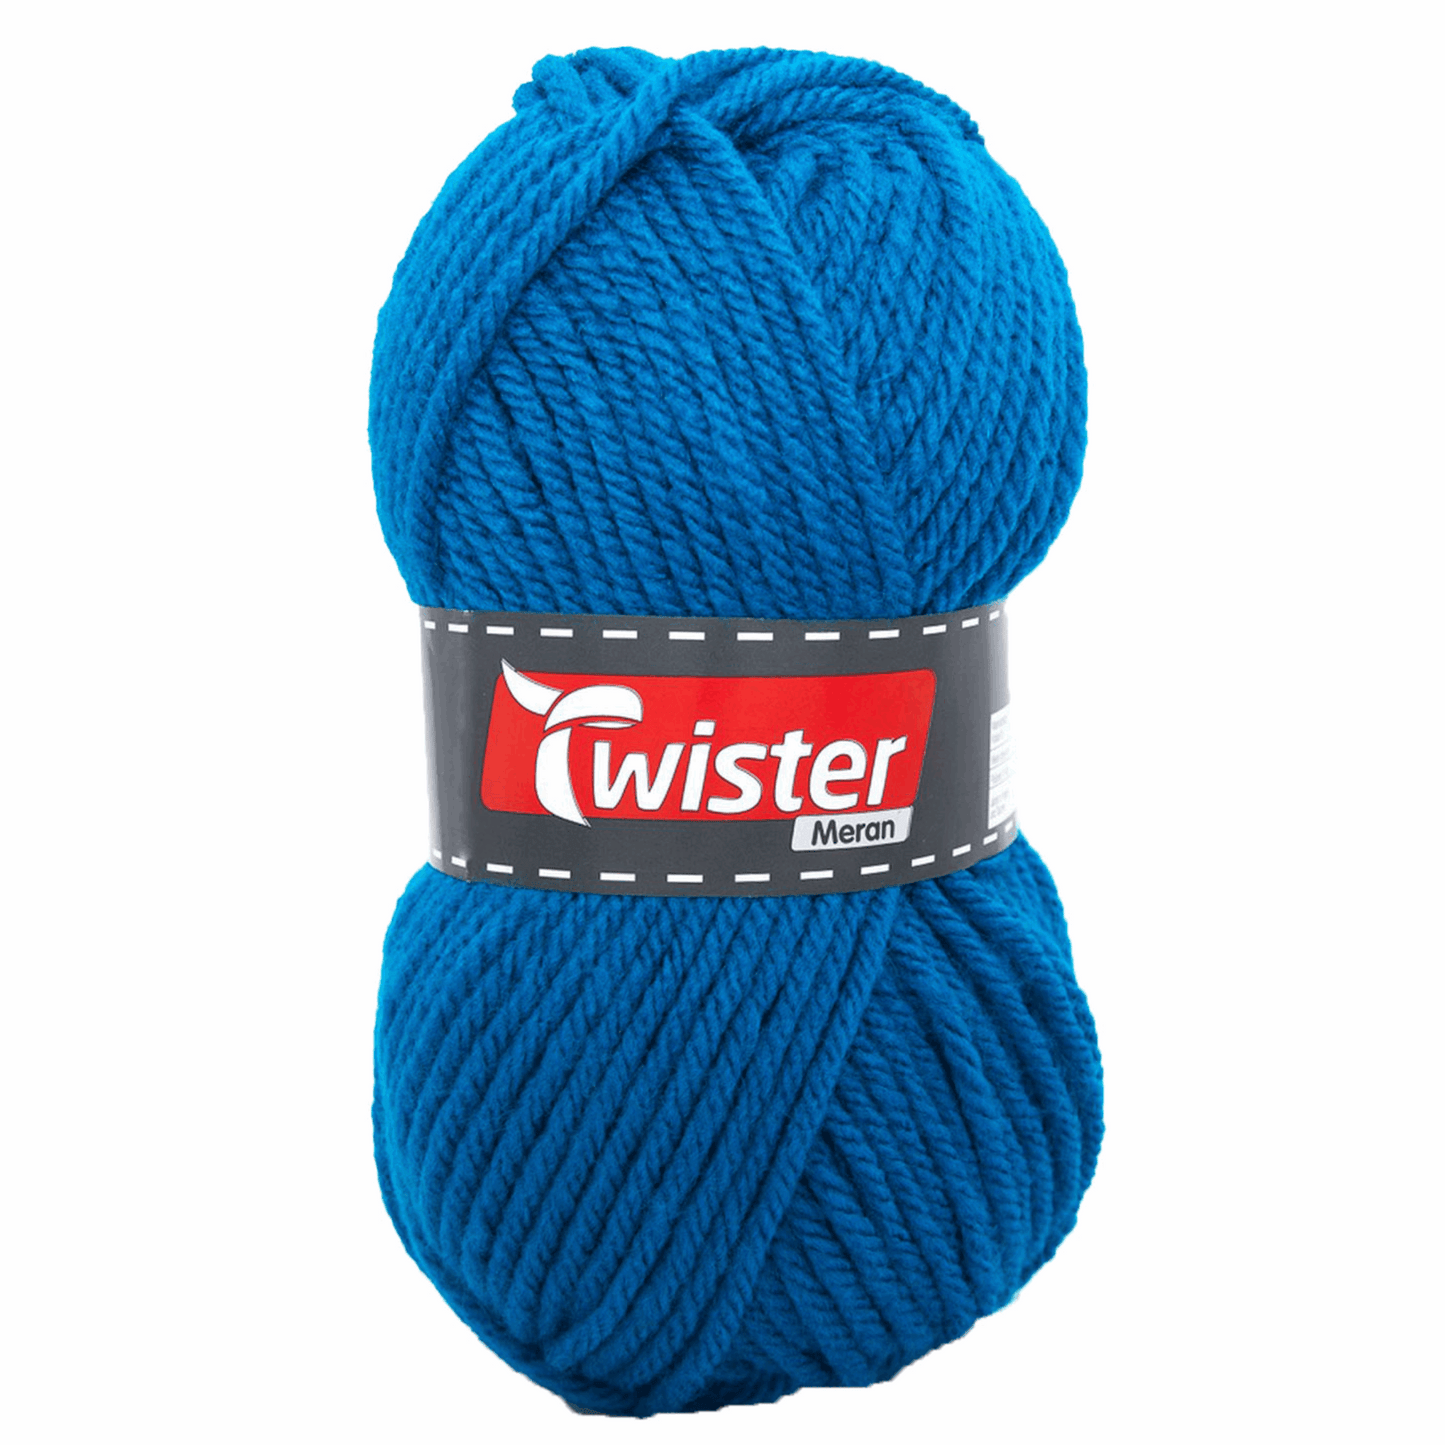 Twister Meran 100g, 98534, Farbe petrol 58